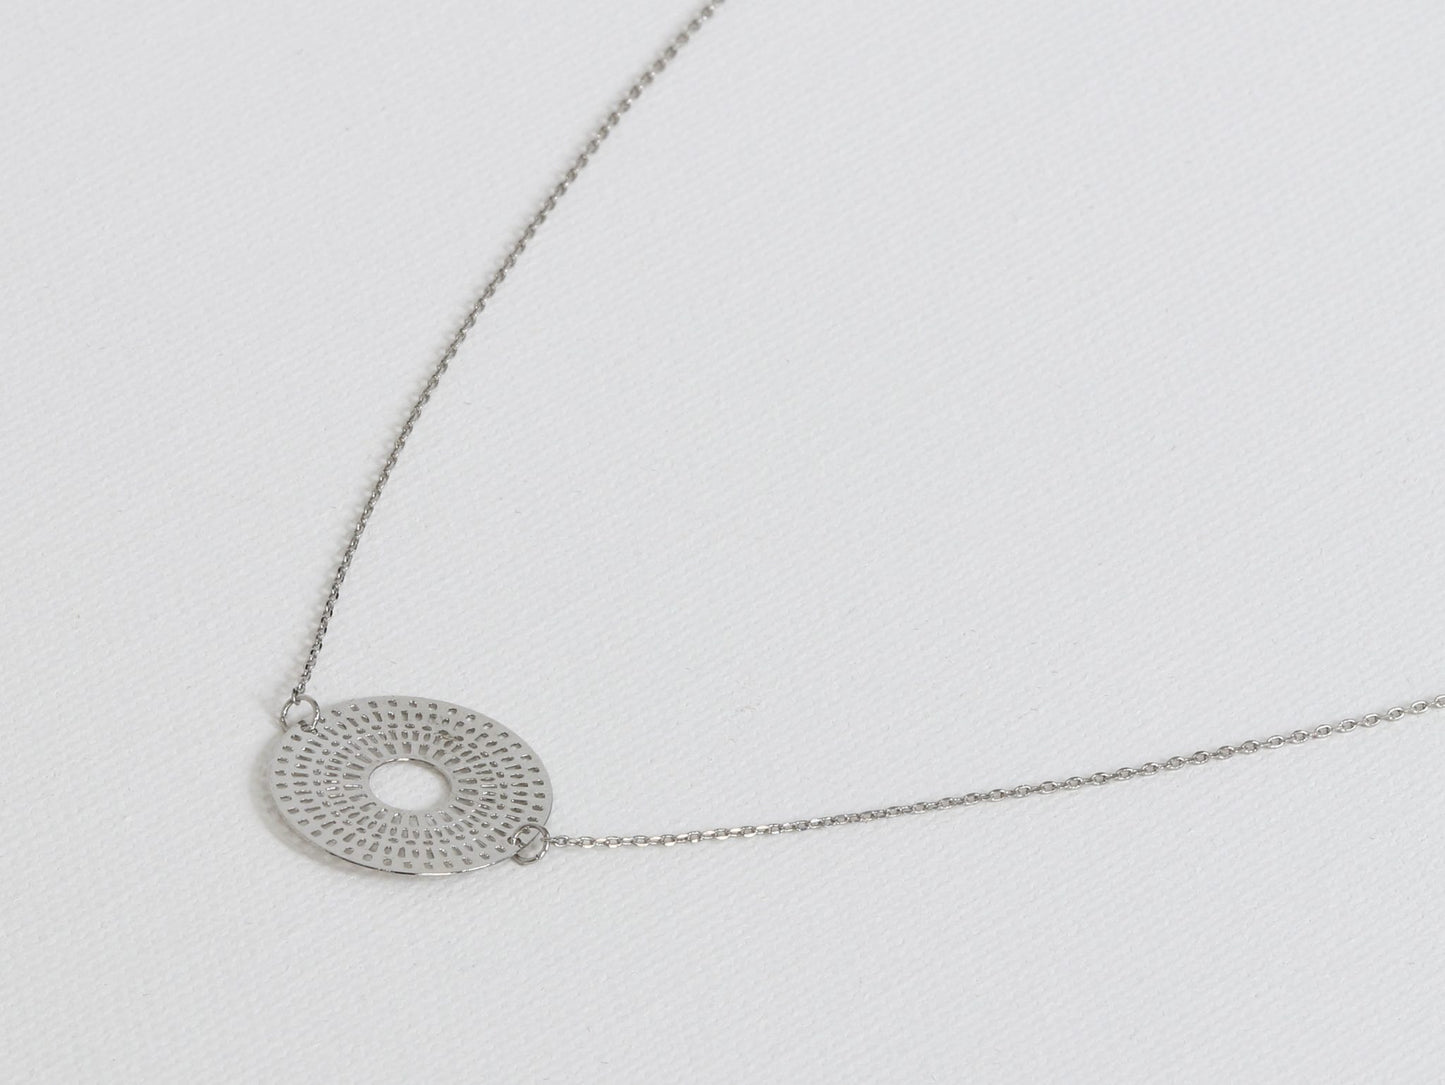 Aphrodite Rising Sun Secret Charm Necklace - Silver